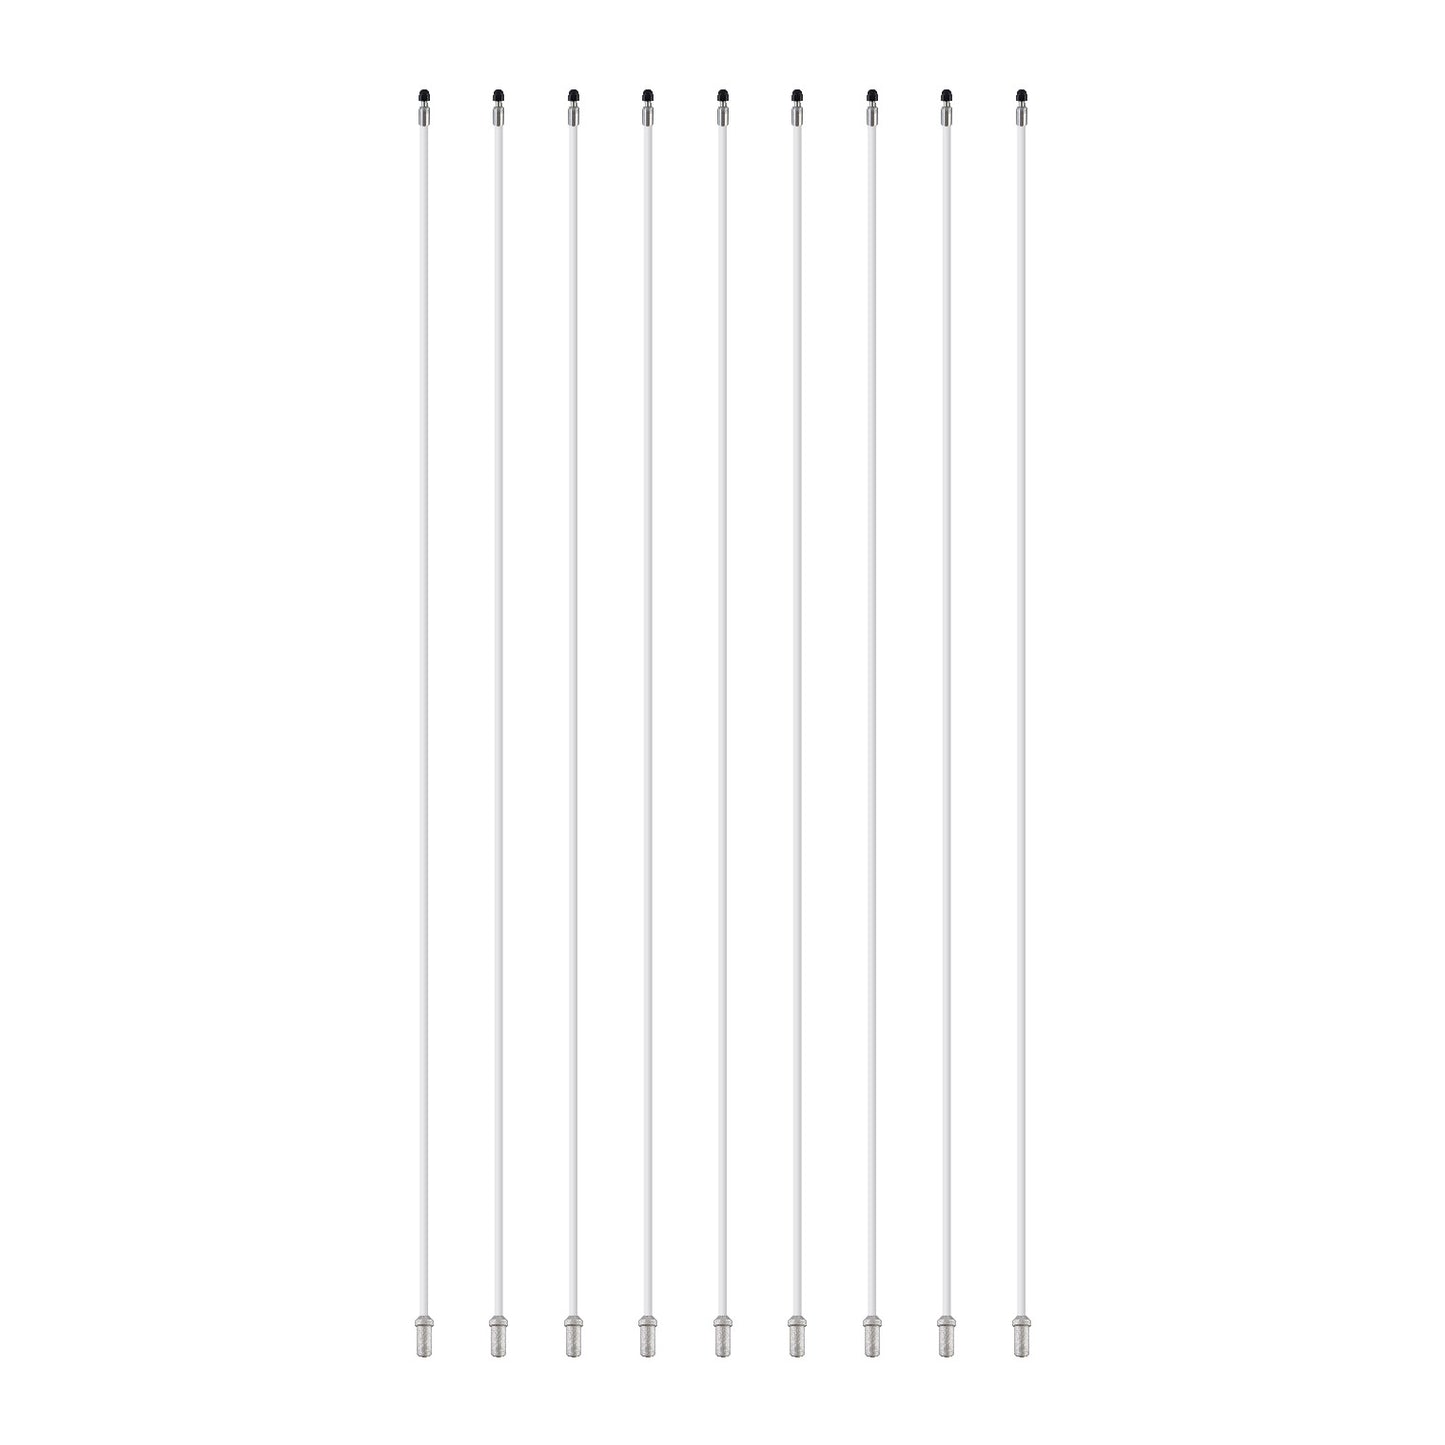 7' White Regulation Flagpole - Set of 9 Poles